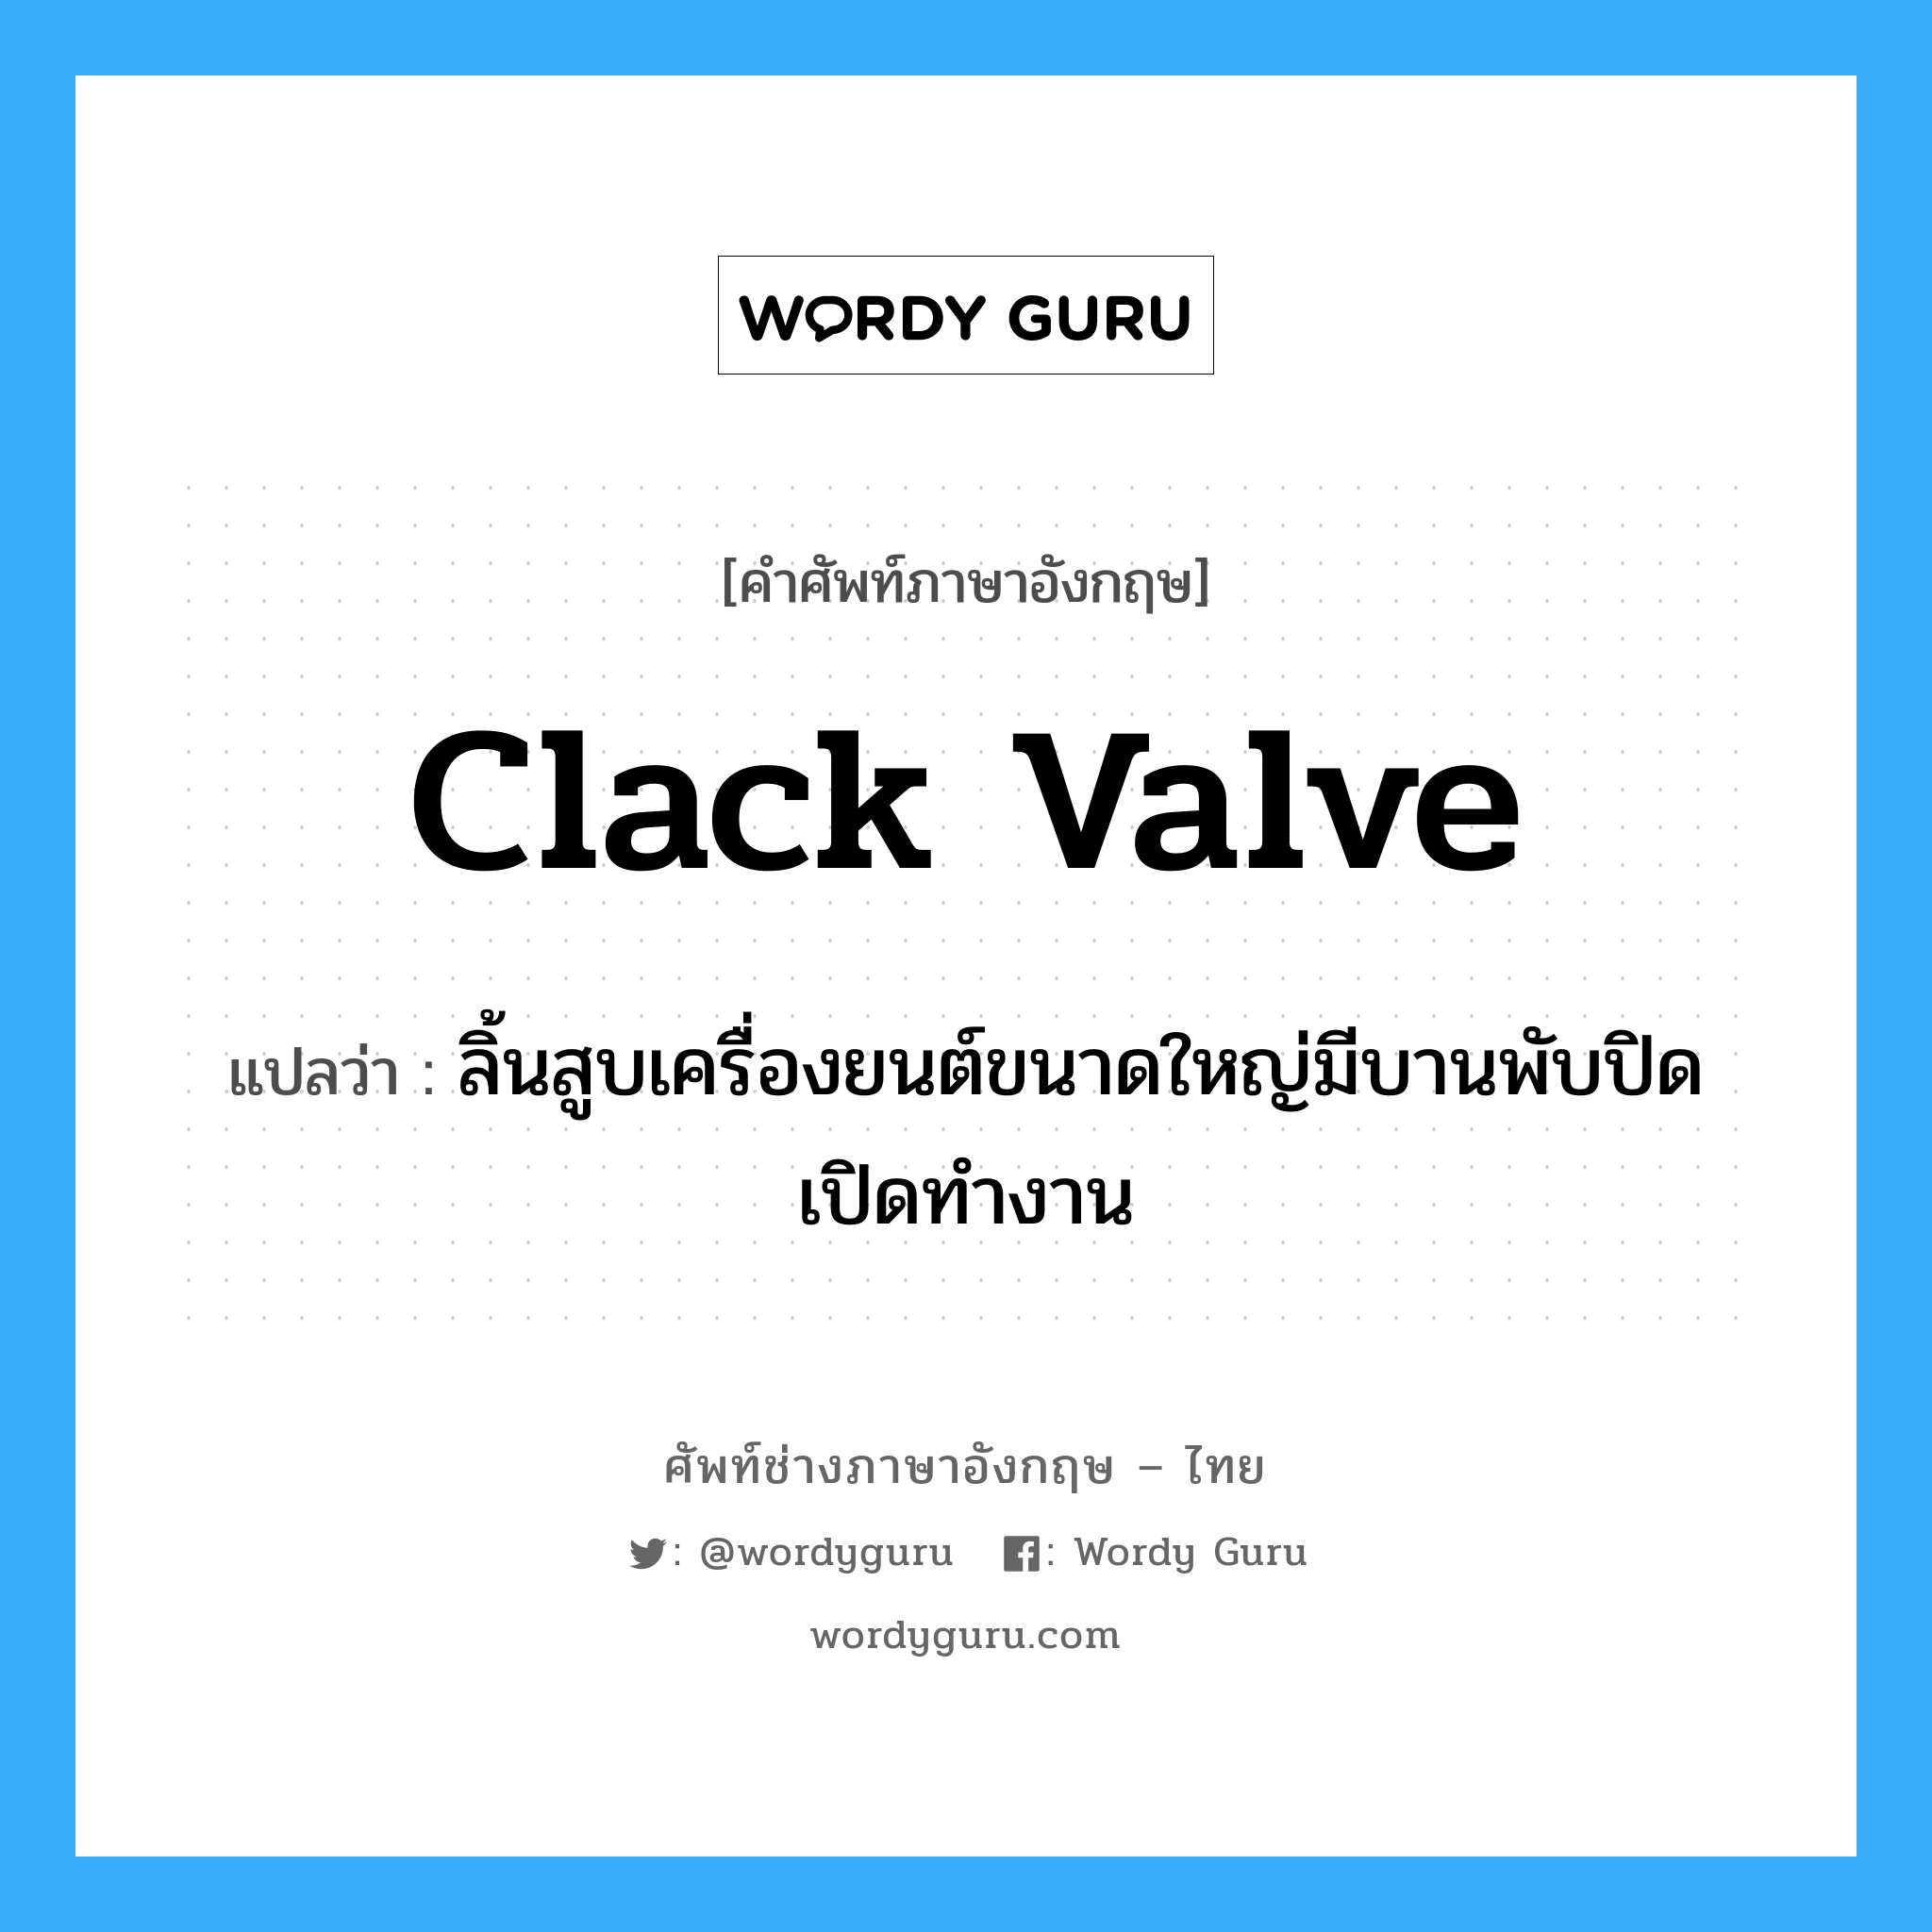 clack valve แปลว่า?, คำศัพท์ช่างภาษาอังกฤษ - ไทย clack valve คำศัพท์ภาษาอังกฤษ clack valve แปลว่า ลิ้นสูบเครื่องยนต์ขนาดใหญ่มีบานพับปิดเปิดทำงาน